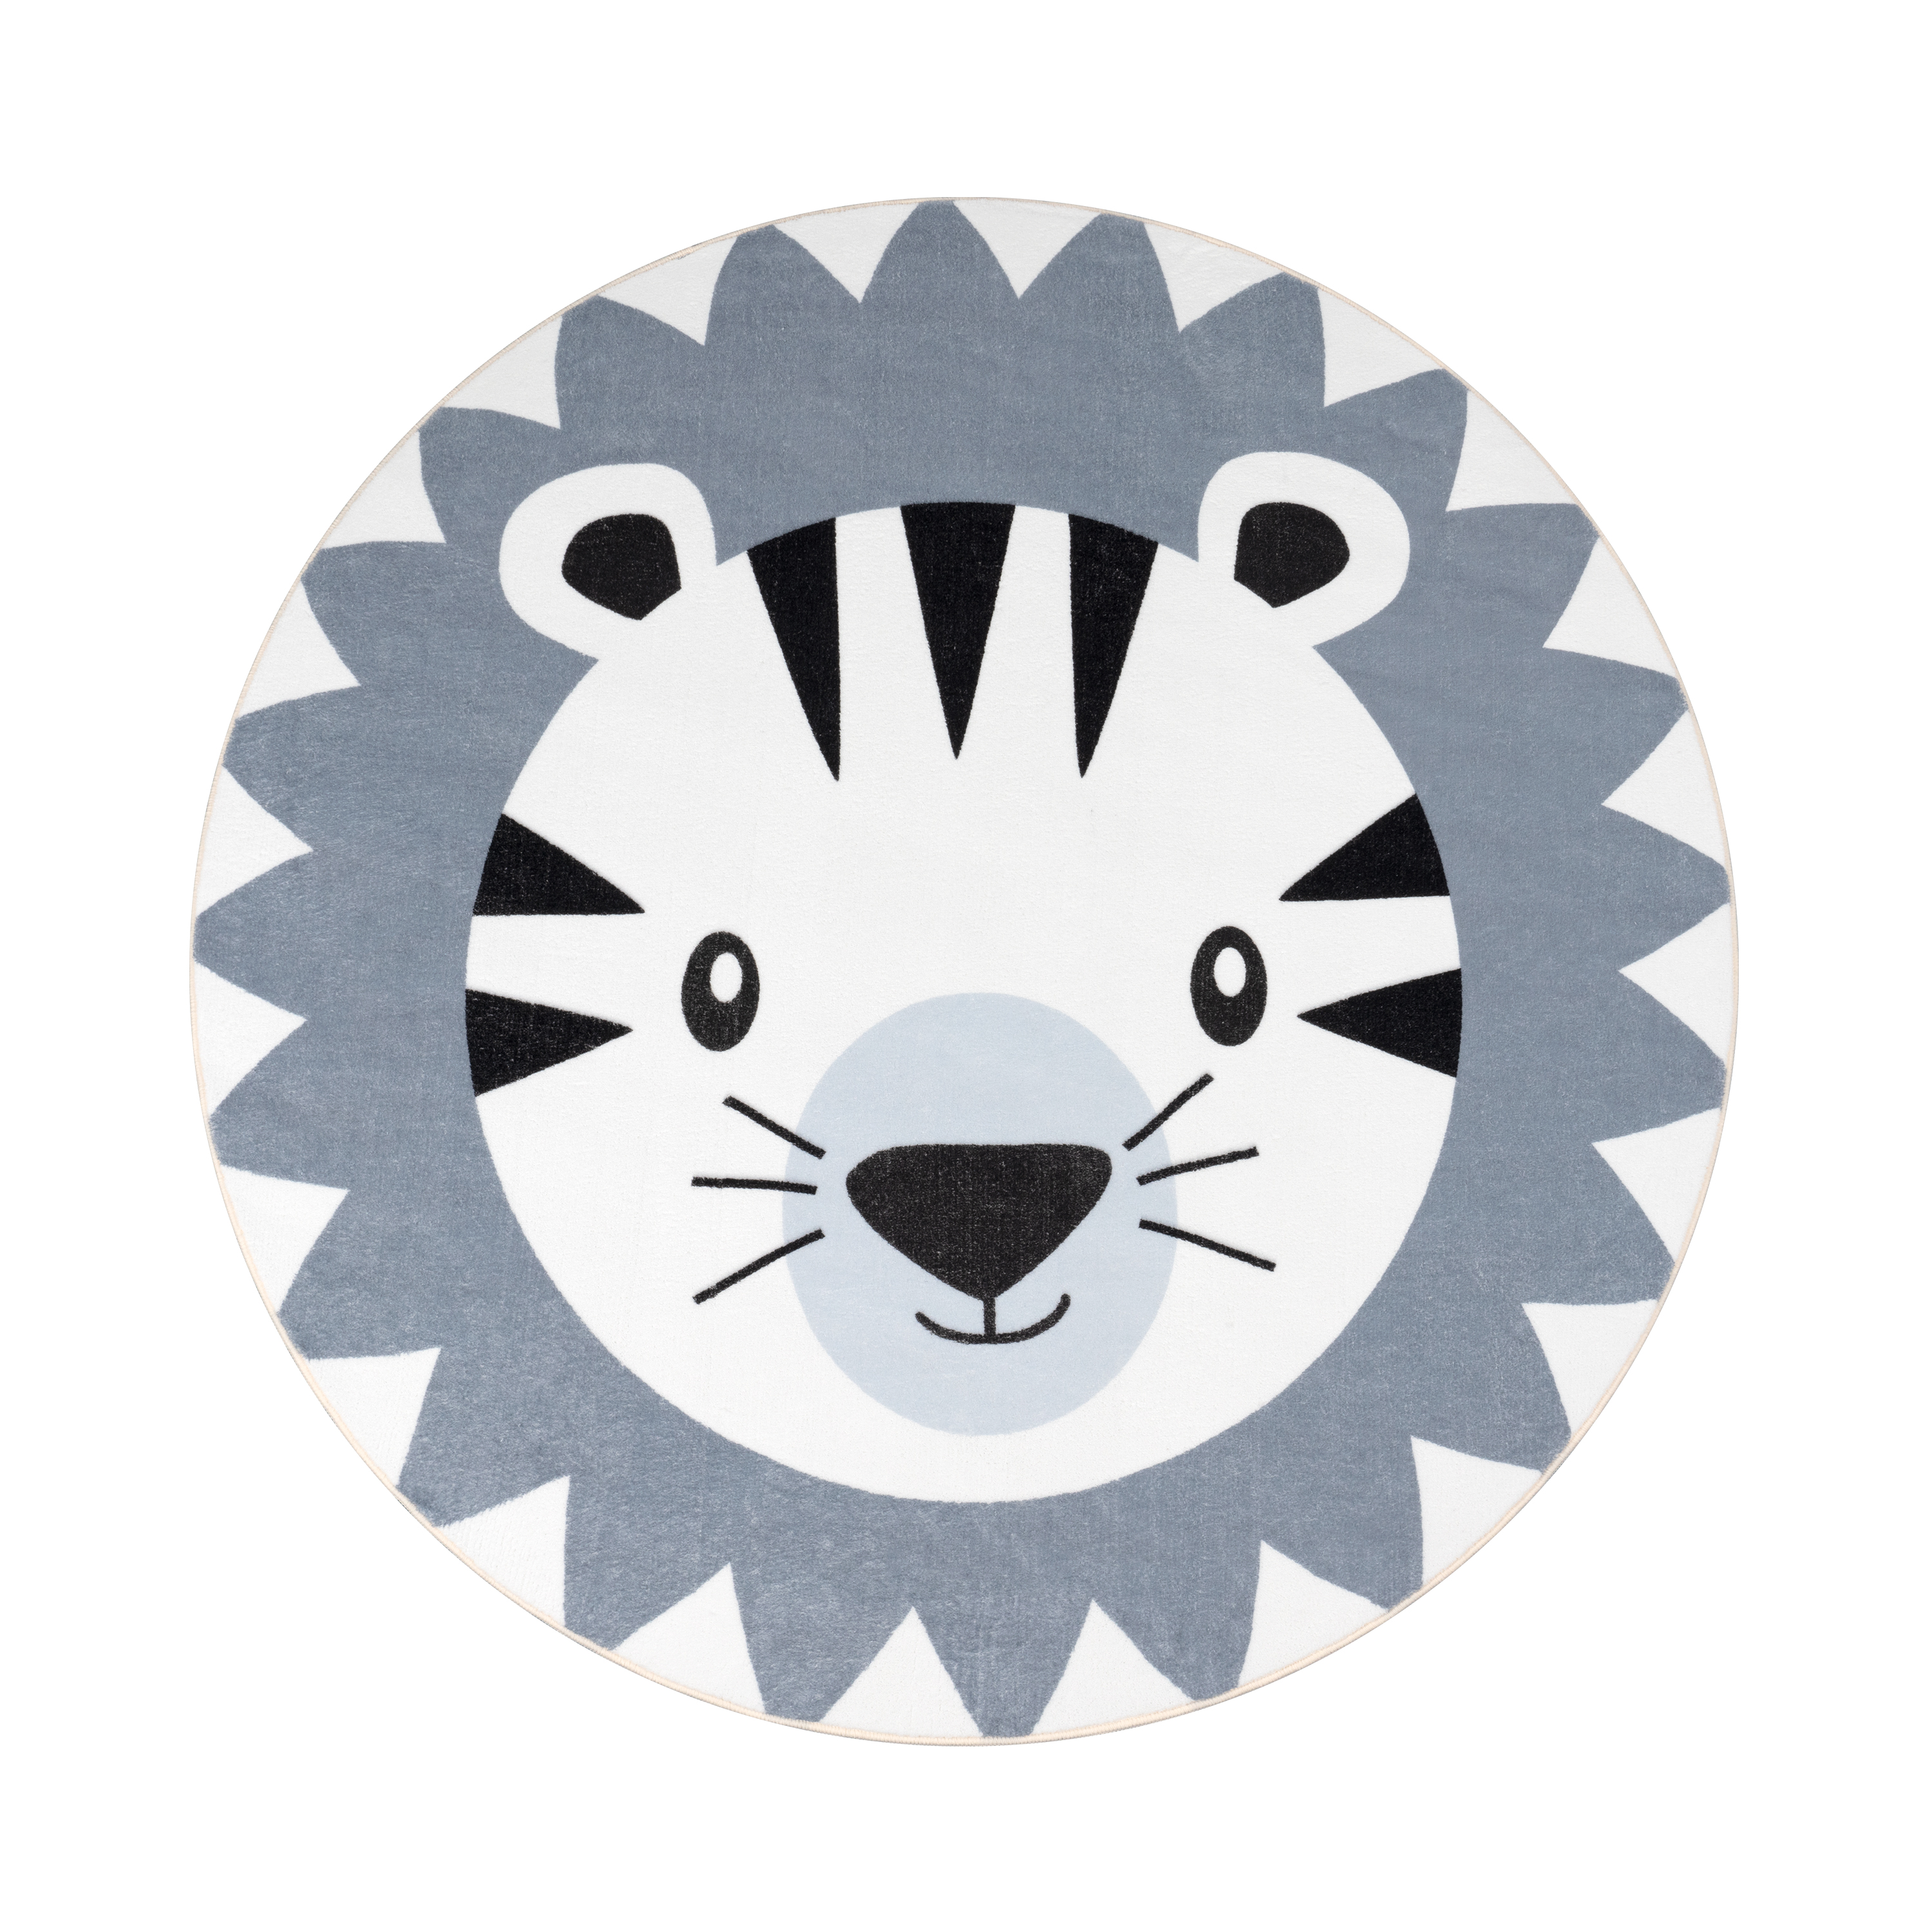 Kinderteppich Spielmatte Löwen Motiv Waschbar Grau Mit Motiv